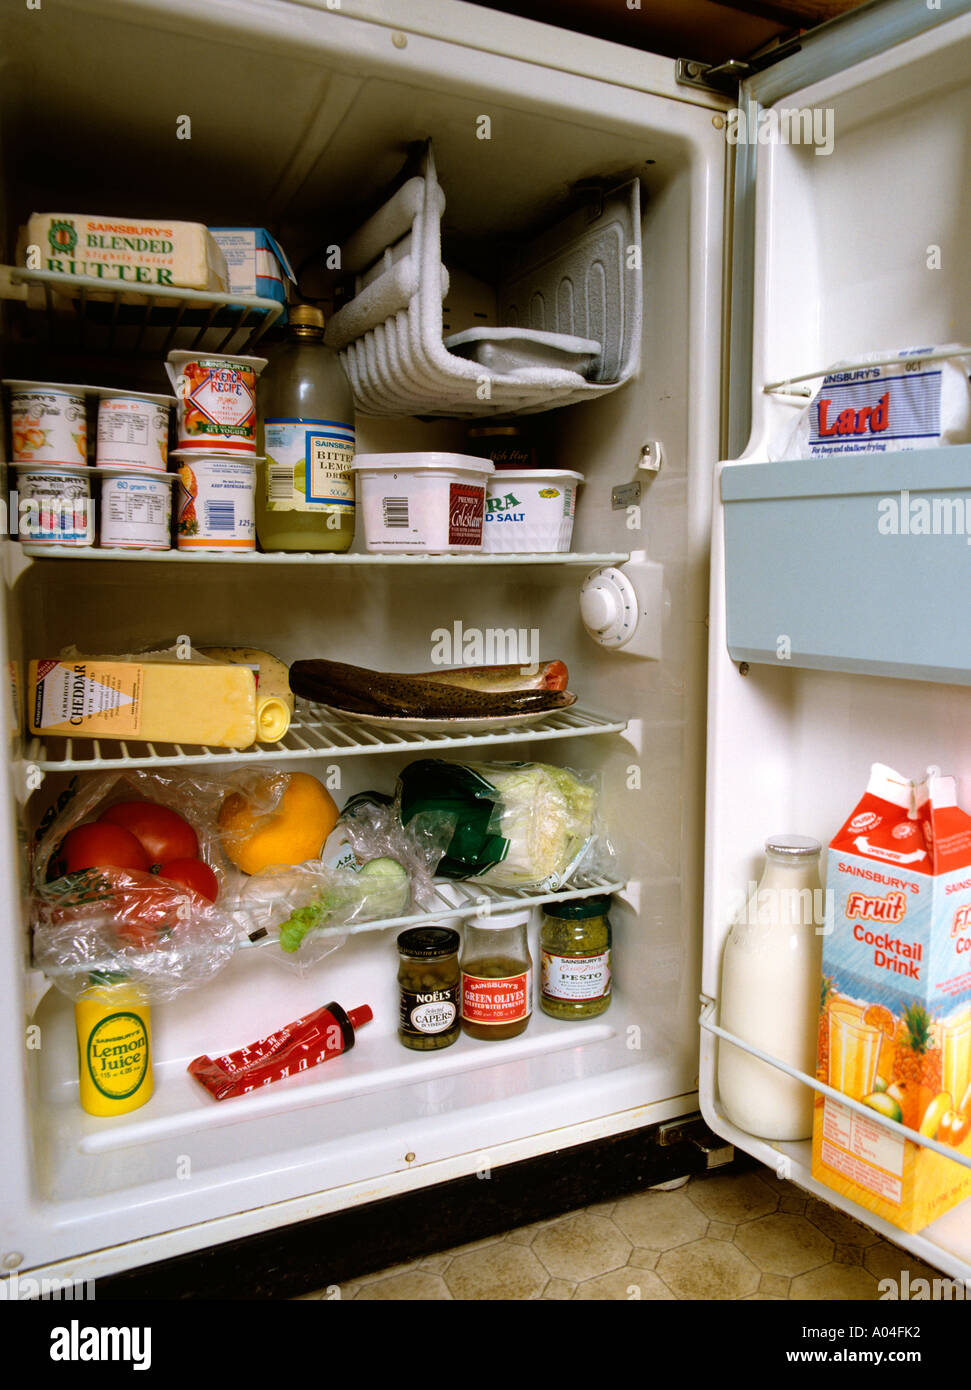 Cucina contenuto del frigorifero domestico Foto Stock